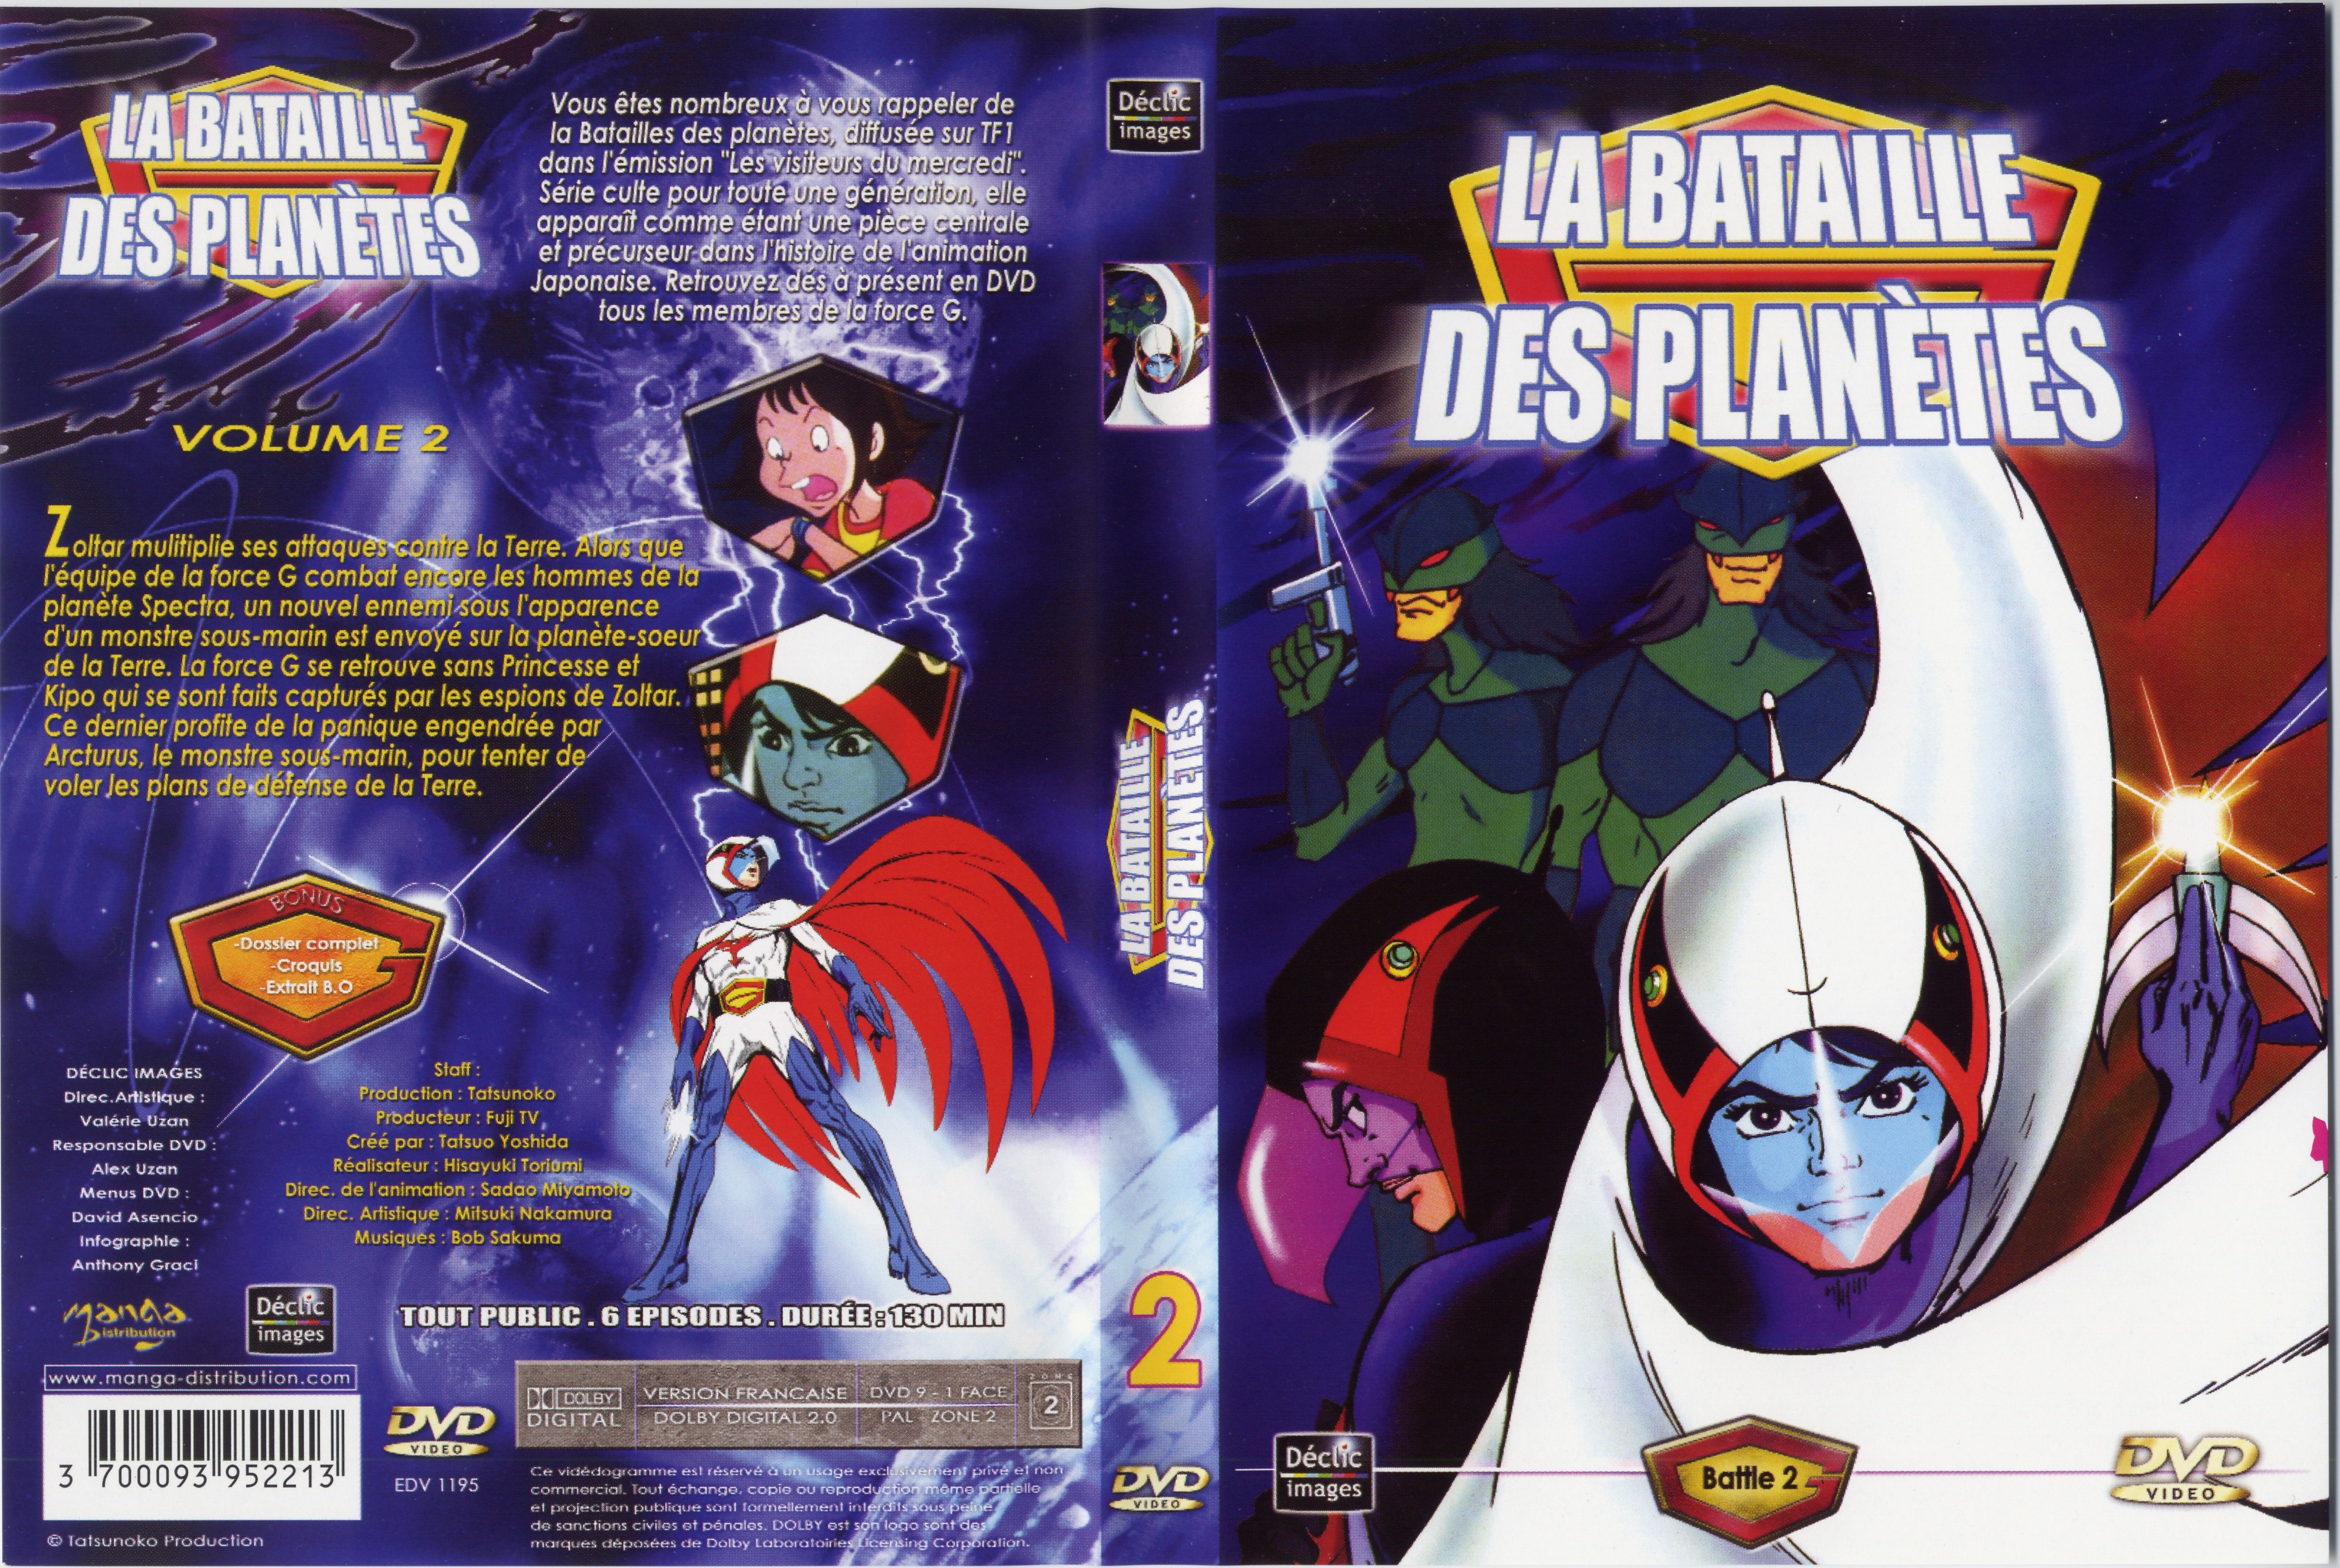 Jaquette DVD La bataille des planetes DVD 02